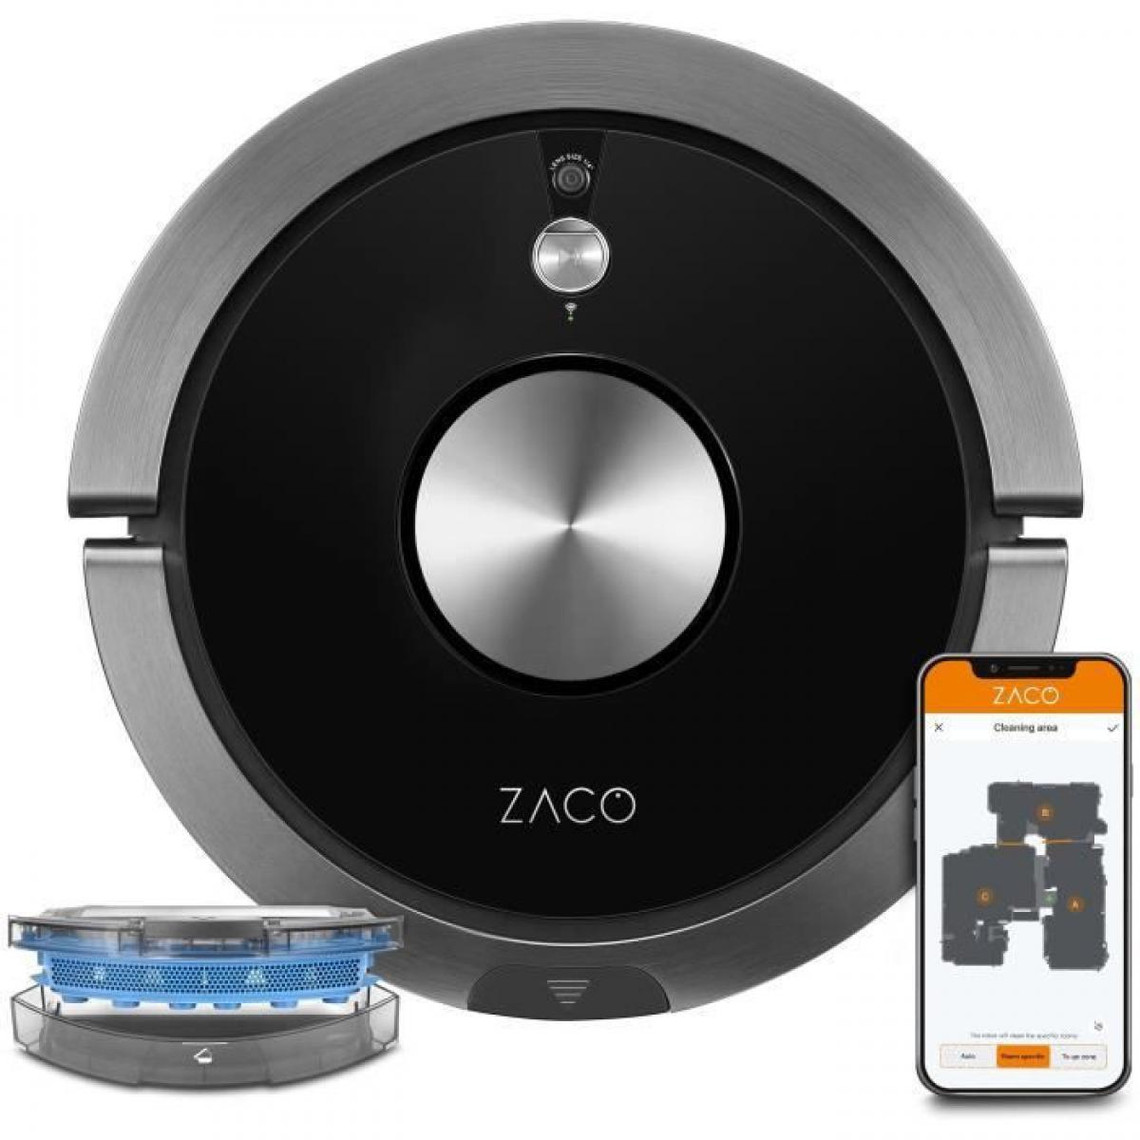 ZACO A9SPRO 501905 - Robot aspirateur laveur connecté Jusqu'a 110 minutes 68 dB Fonction auto-résumé